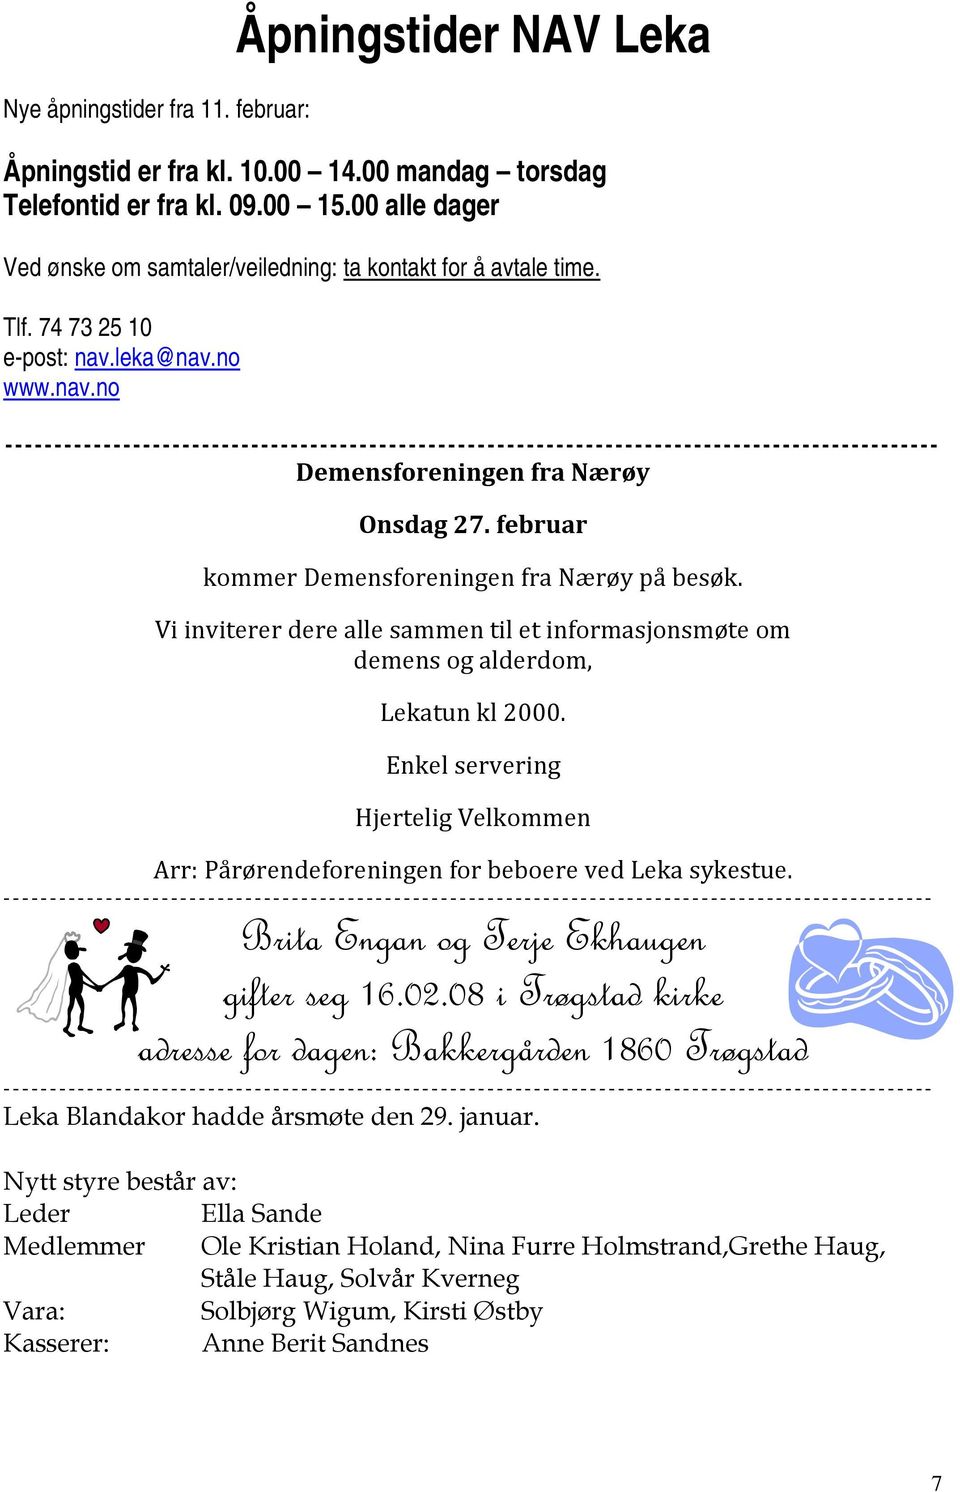 februar kommer Demensforeningen fra Nærøy på besøk. Vi inviterer dere alle sammen til et informasjonsmøte om demens og alderdom, Lekatun kl 2000.